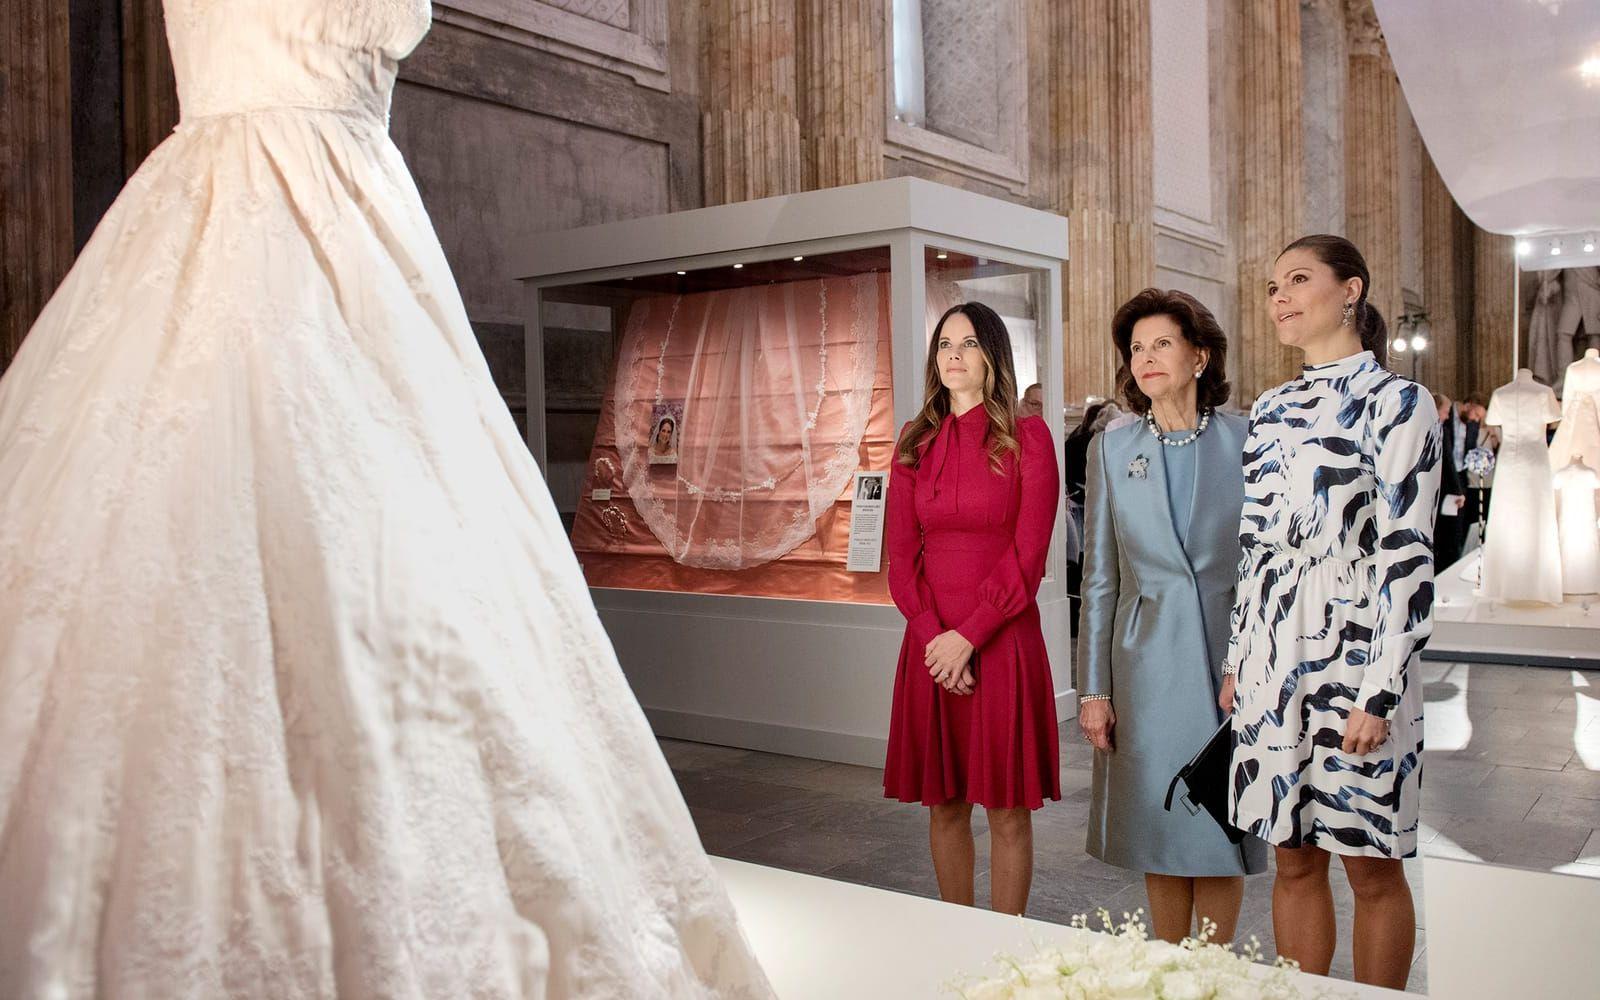 17 oktober: Prinsessan Sofia, kronprinsessan Victoria och drottning SIlvia närvarar vid invigningen av utställningen ”Kungliga brudklänningar 1976-2015” i Rikssalen på slottet. En utställning som trion i allra högsta grad bidragit till! Foto: TT